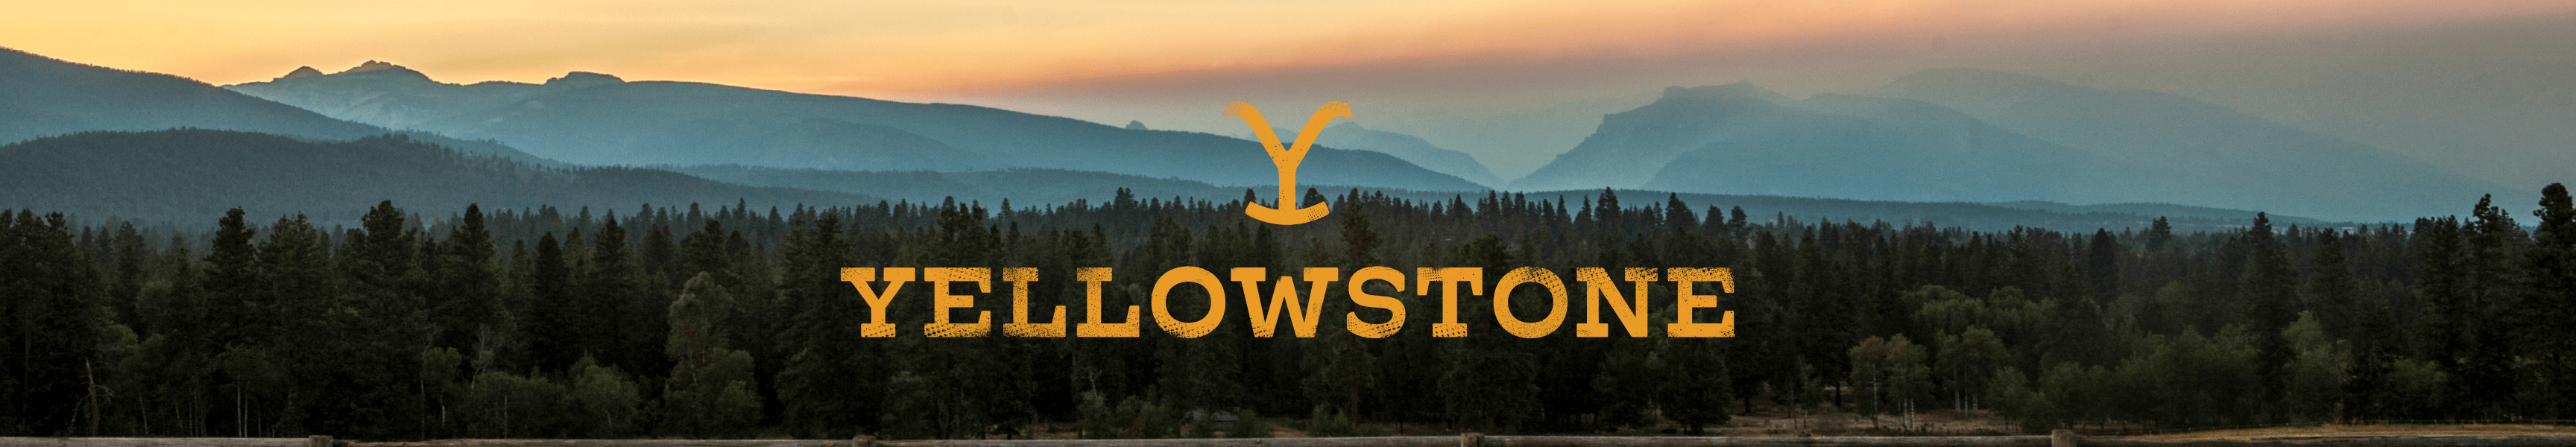 Joggeurs de Yellowstone et pantalon de survêtement